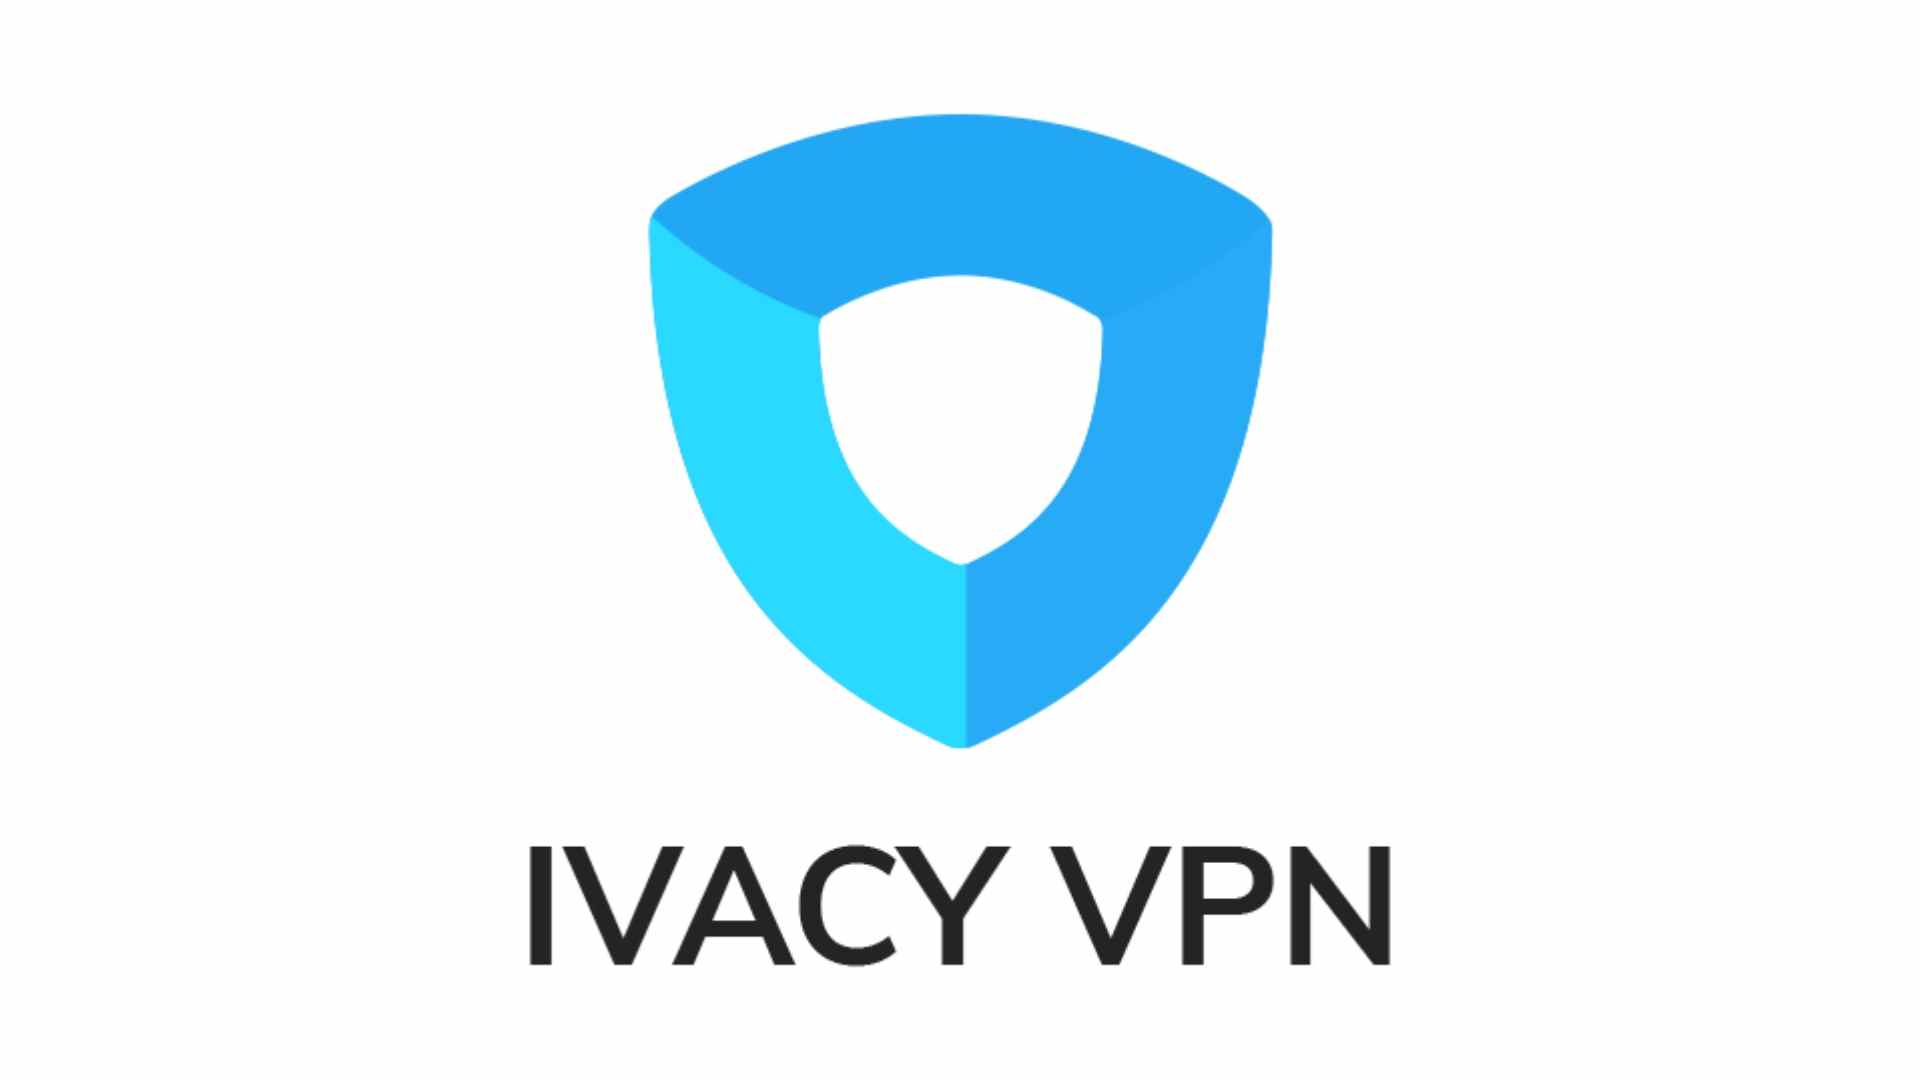 Meilleur VPN pas cher, option 2 - Ivacy VPN.  Une image montre son logo.